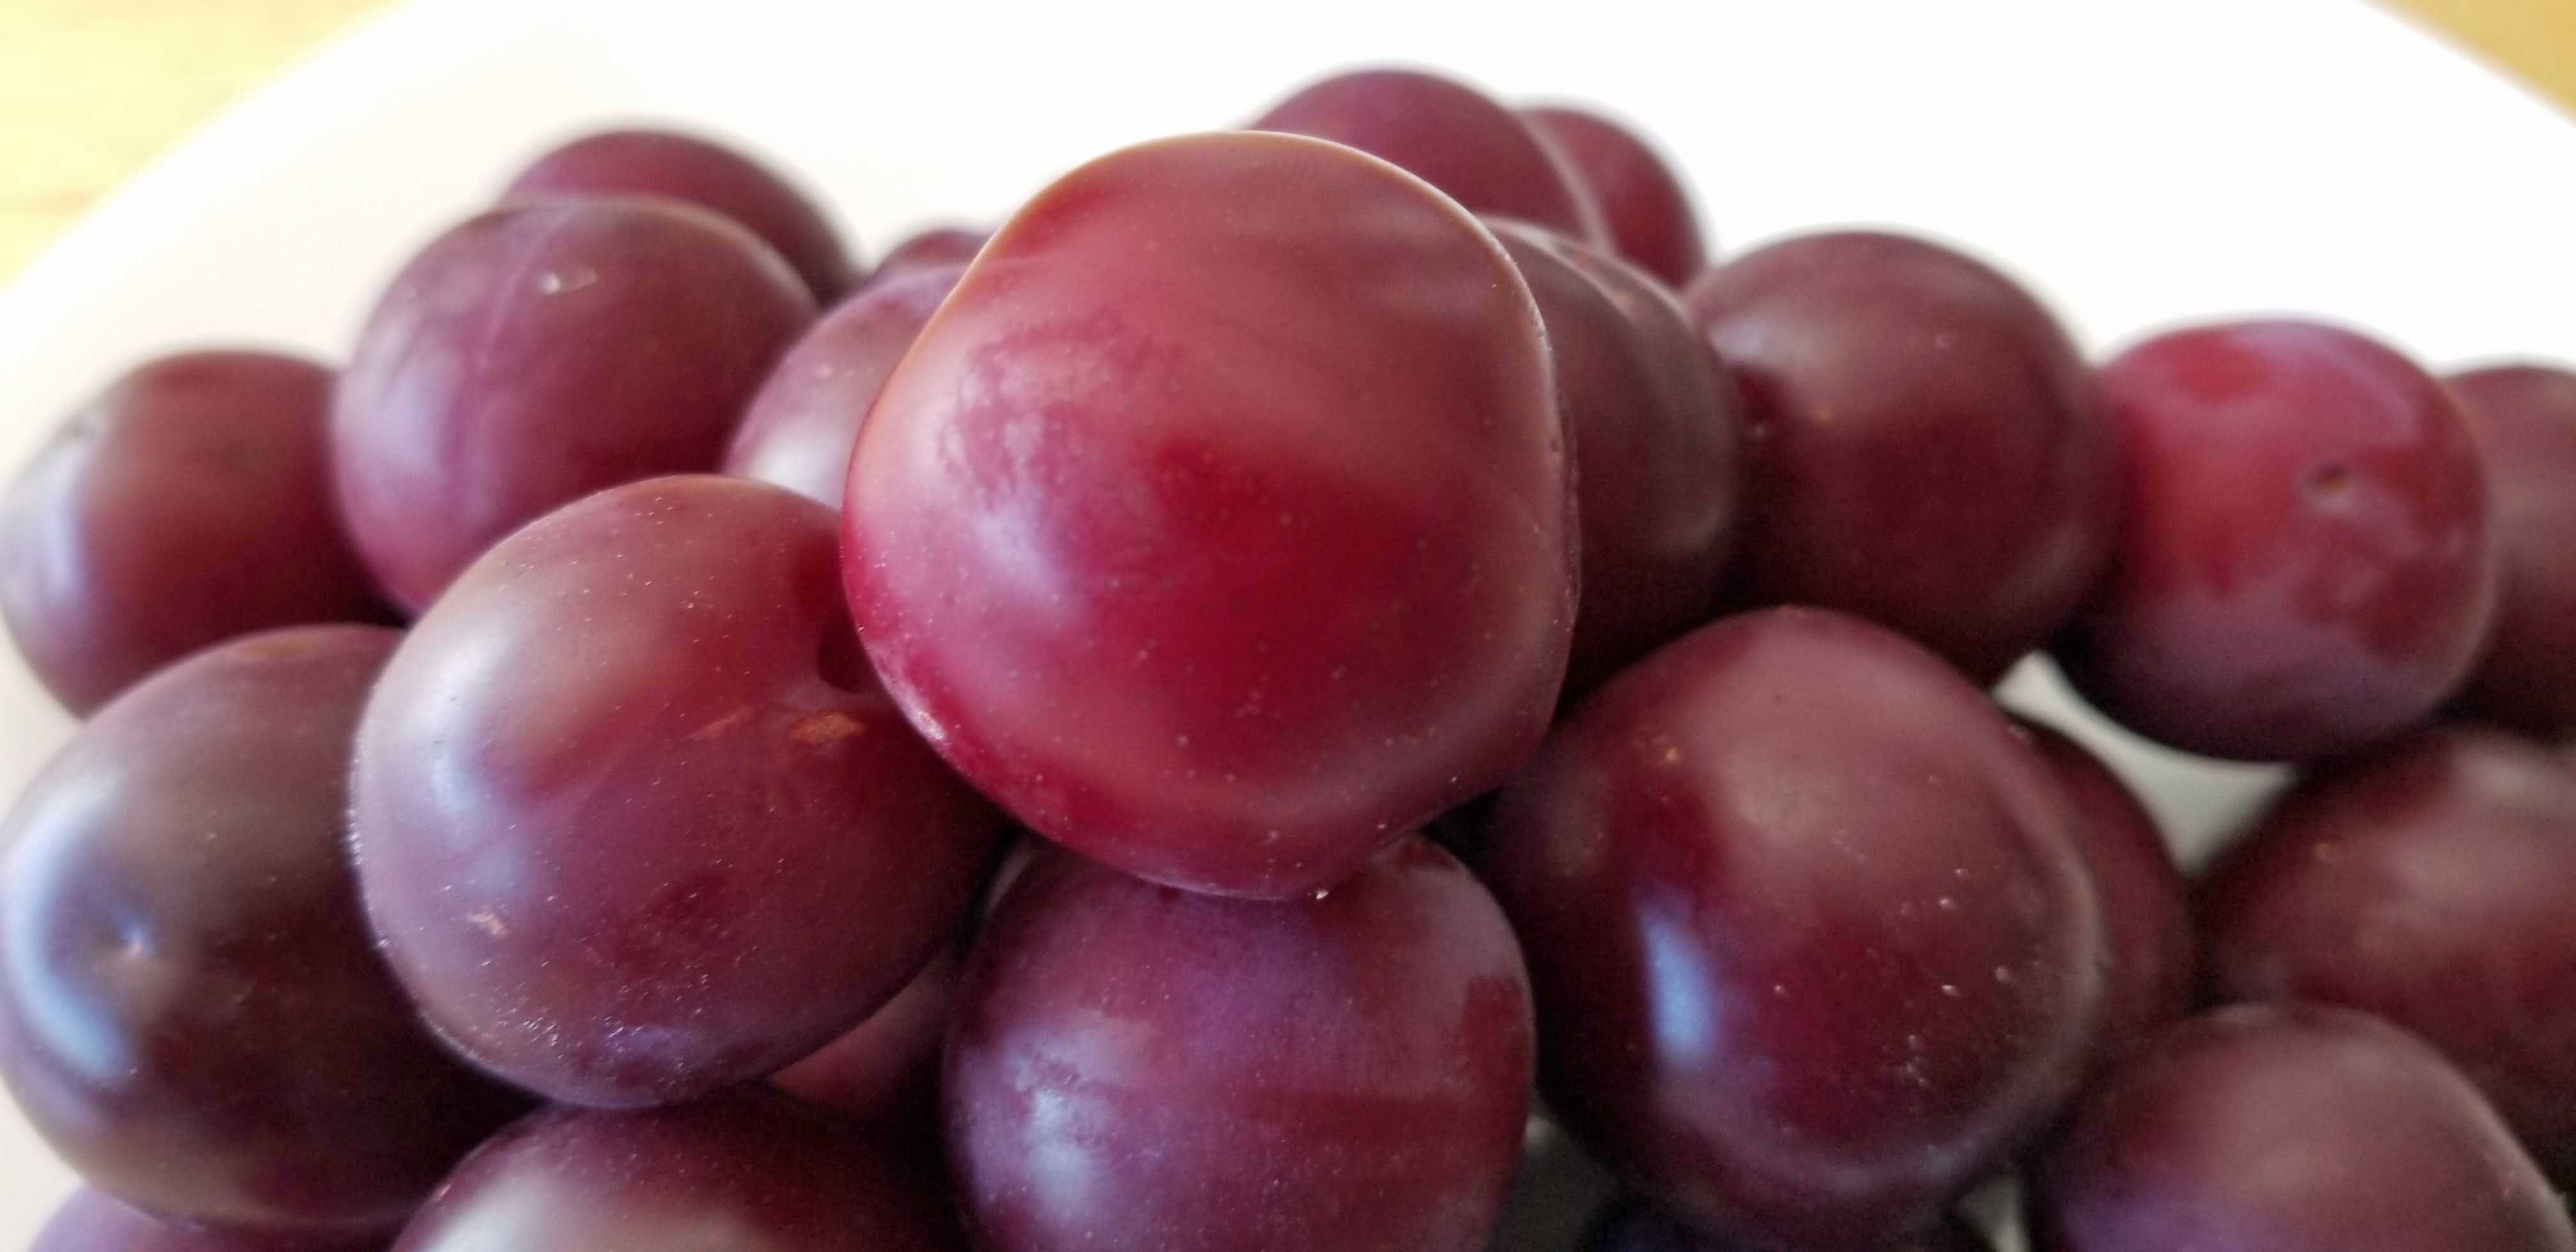 plums-closeup